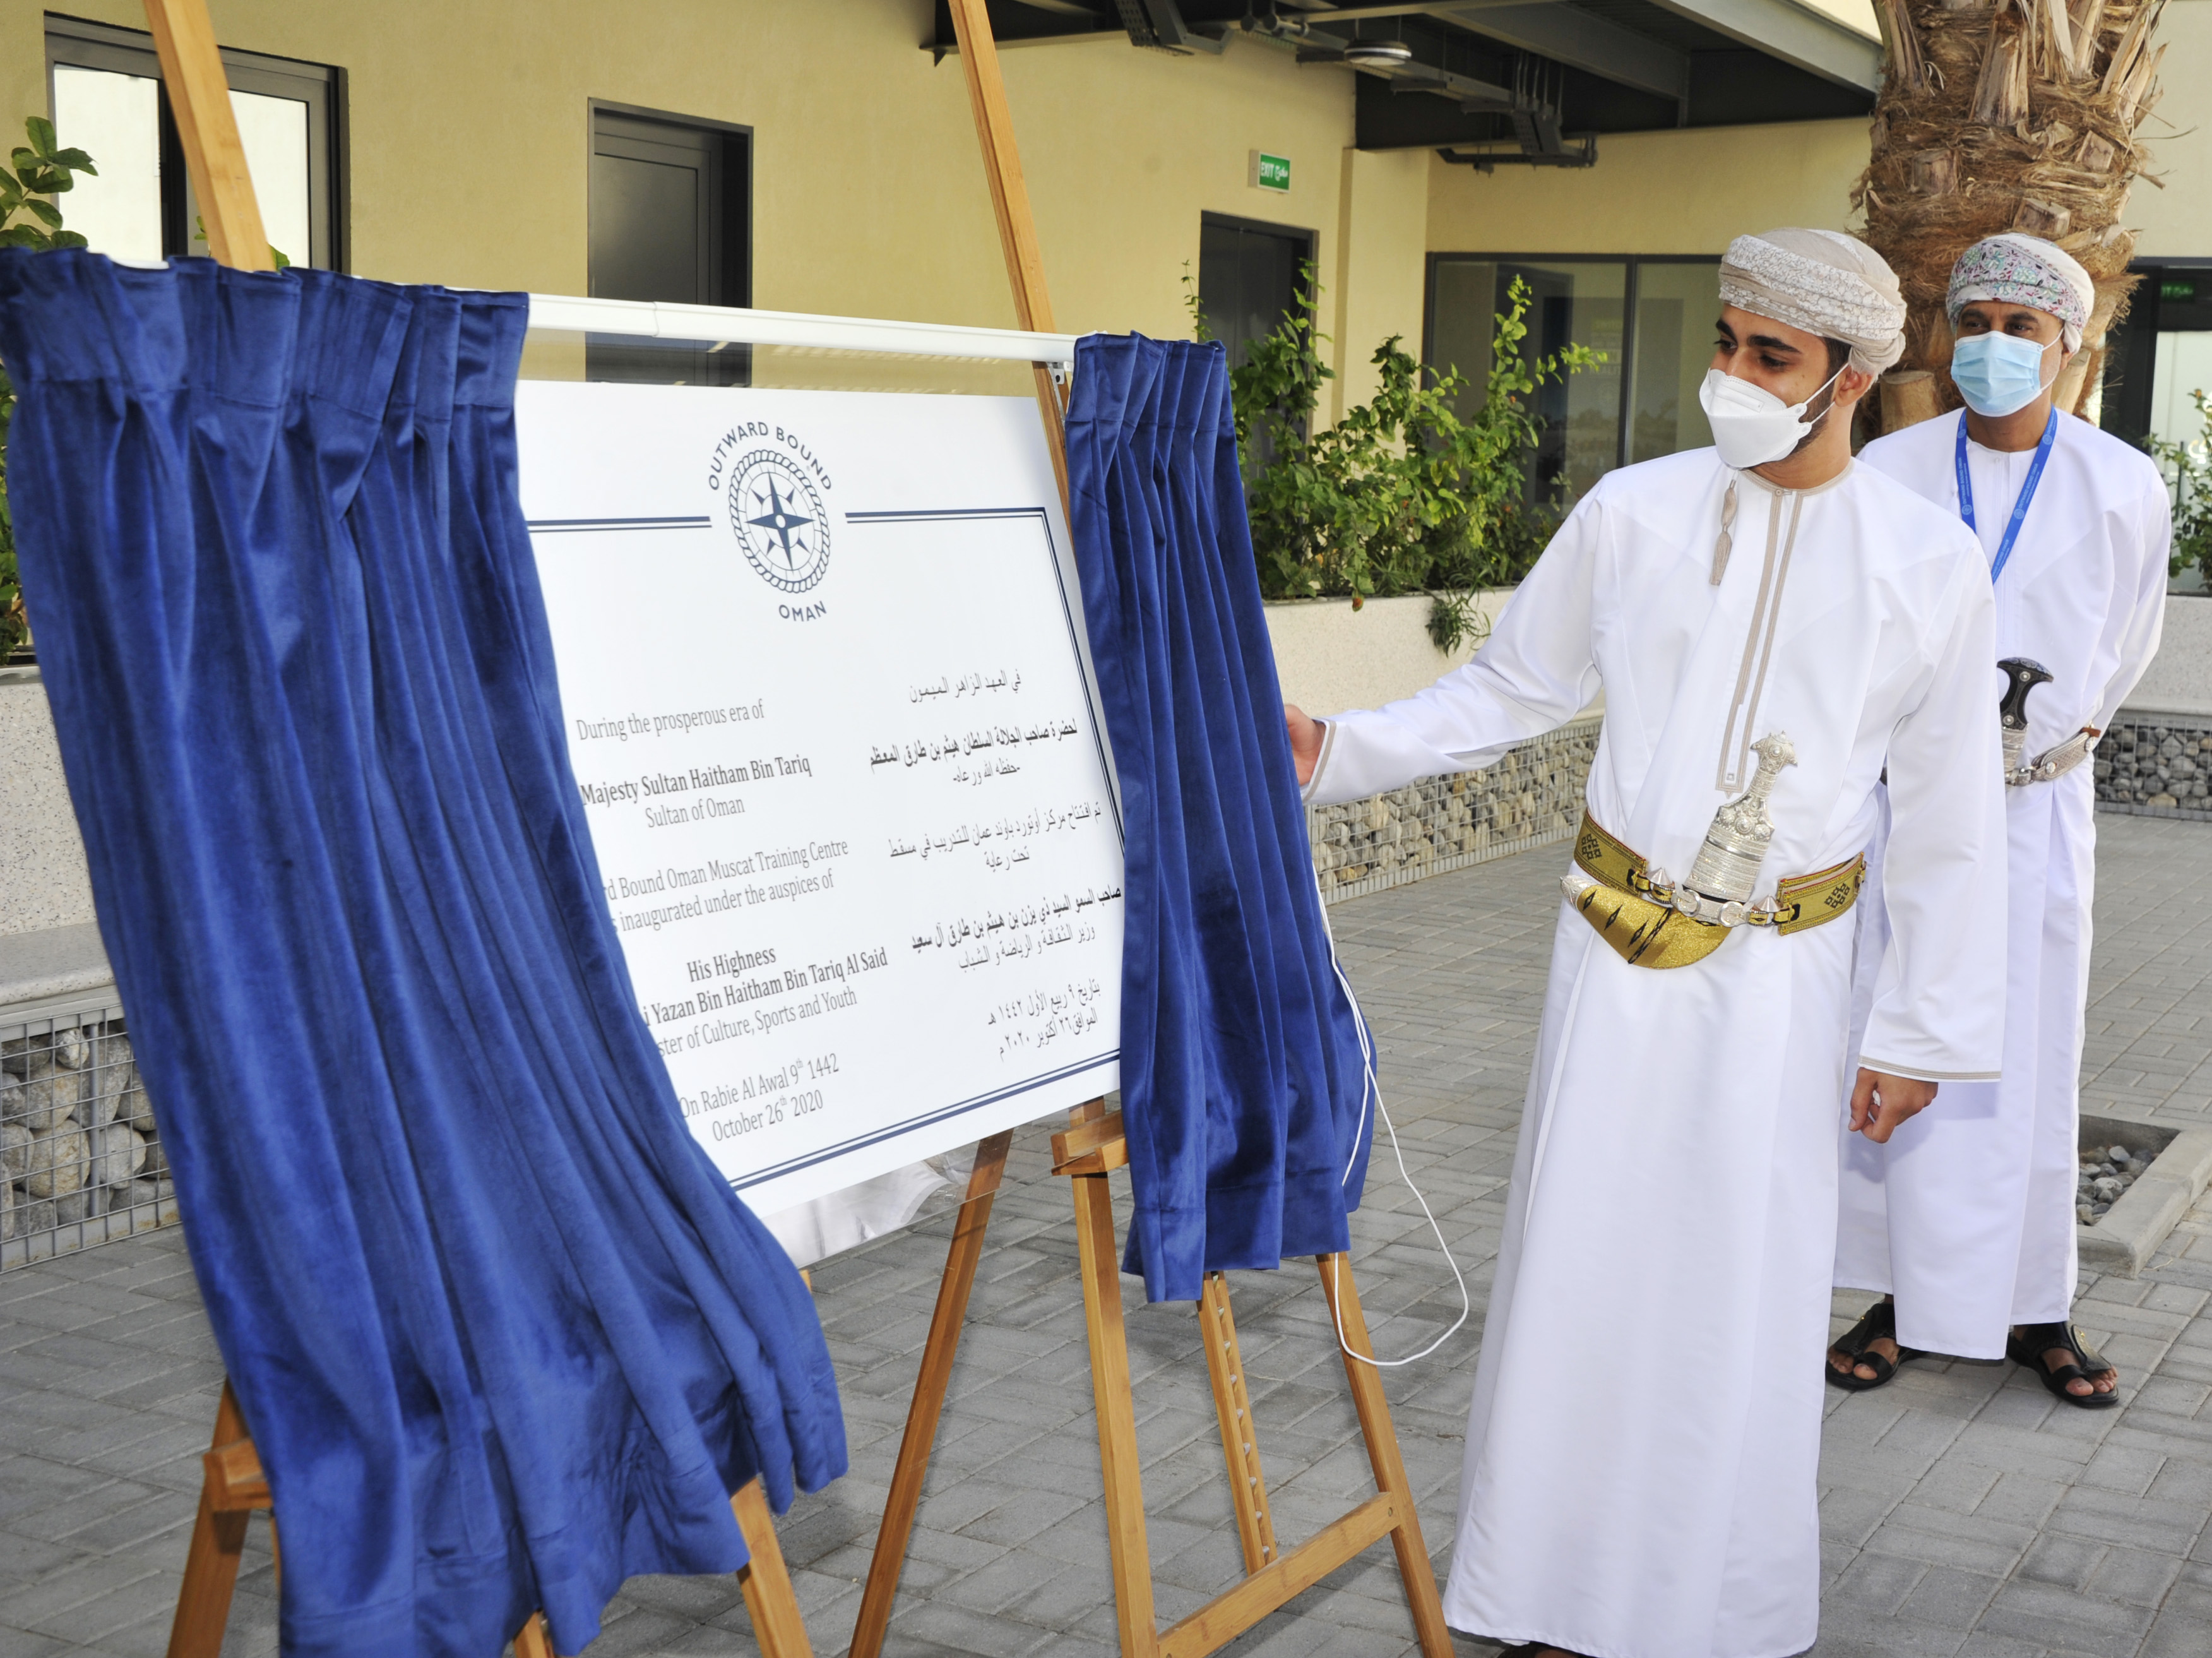 افتتاح-مركز-اوتورد-باوند-عمان-لتدريب-الشباب-في-مسقط-٢٥-١٠-٢٠٢٠تصوير-العمانية